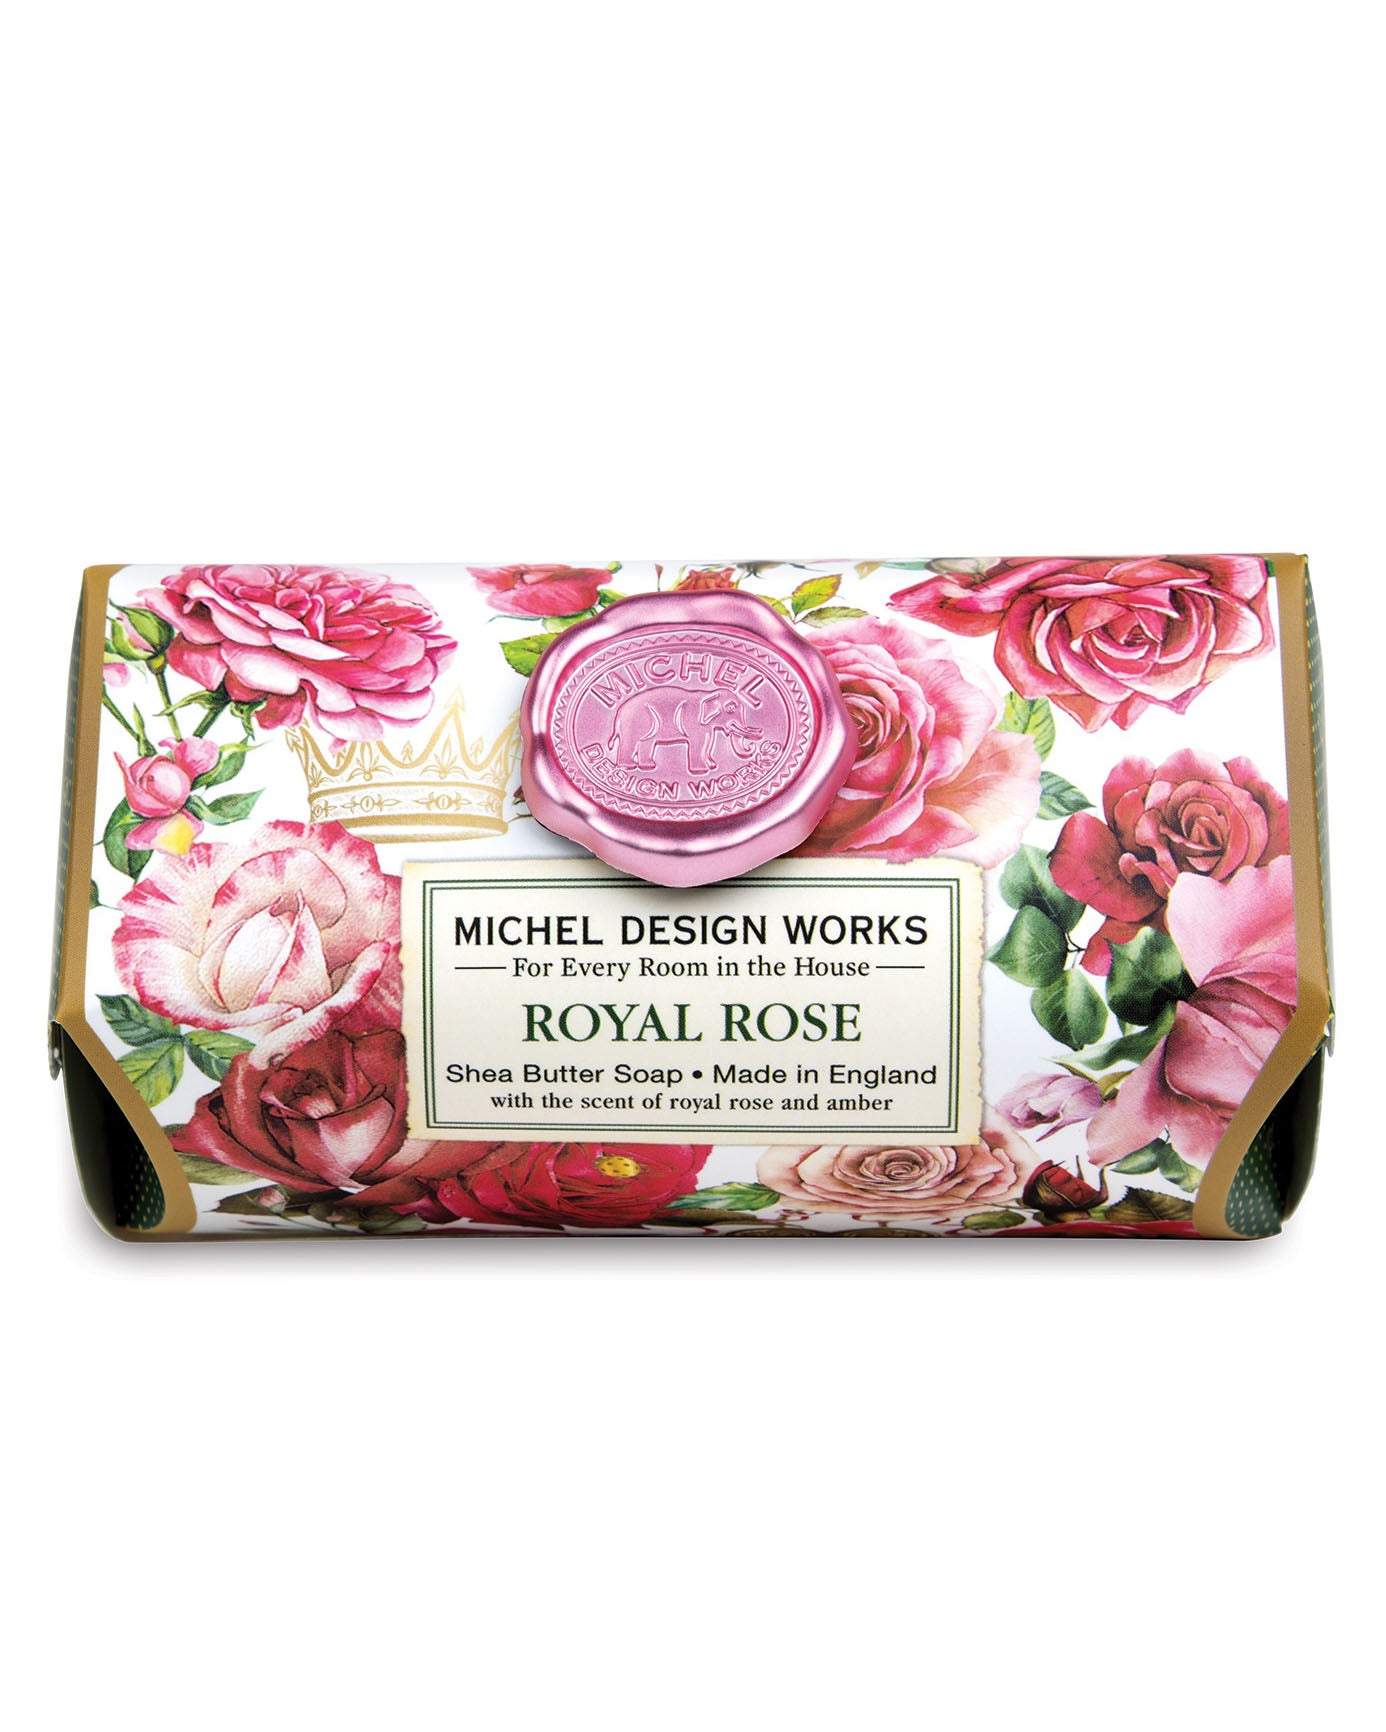 Michel Design Works Royal Rose Large Soap Bar